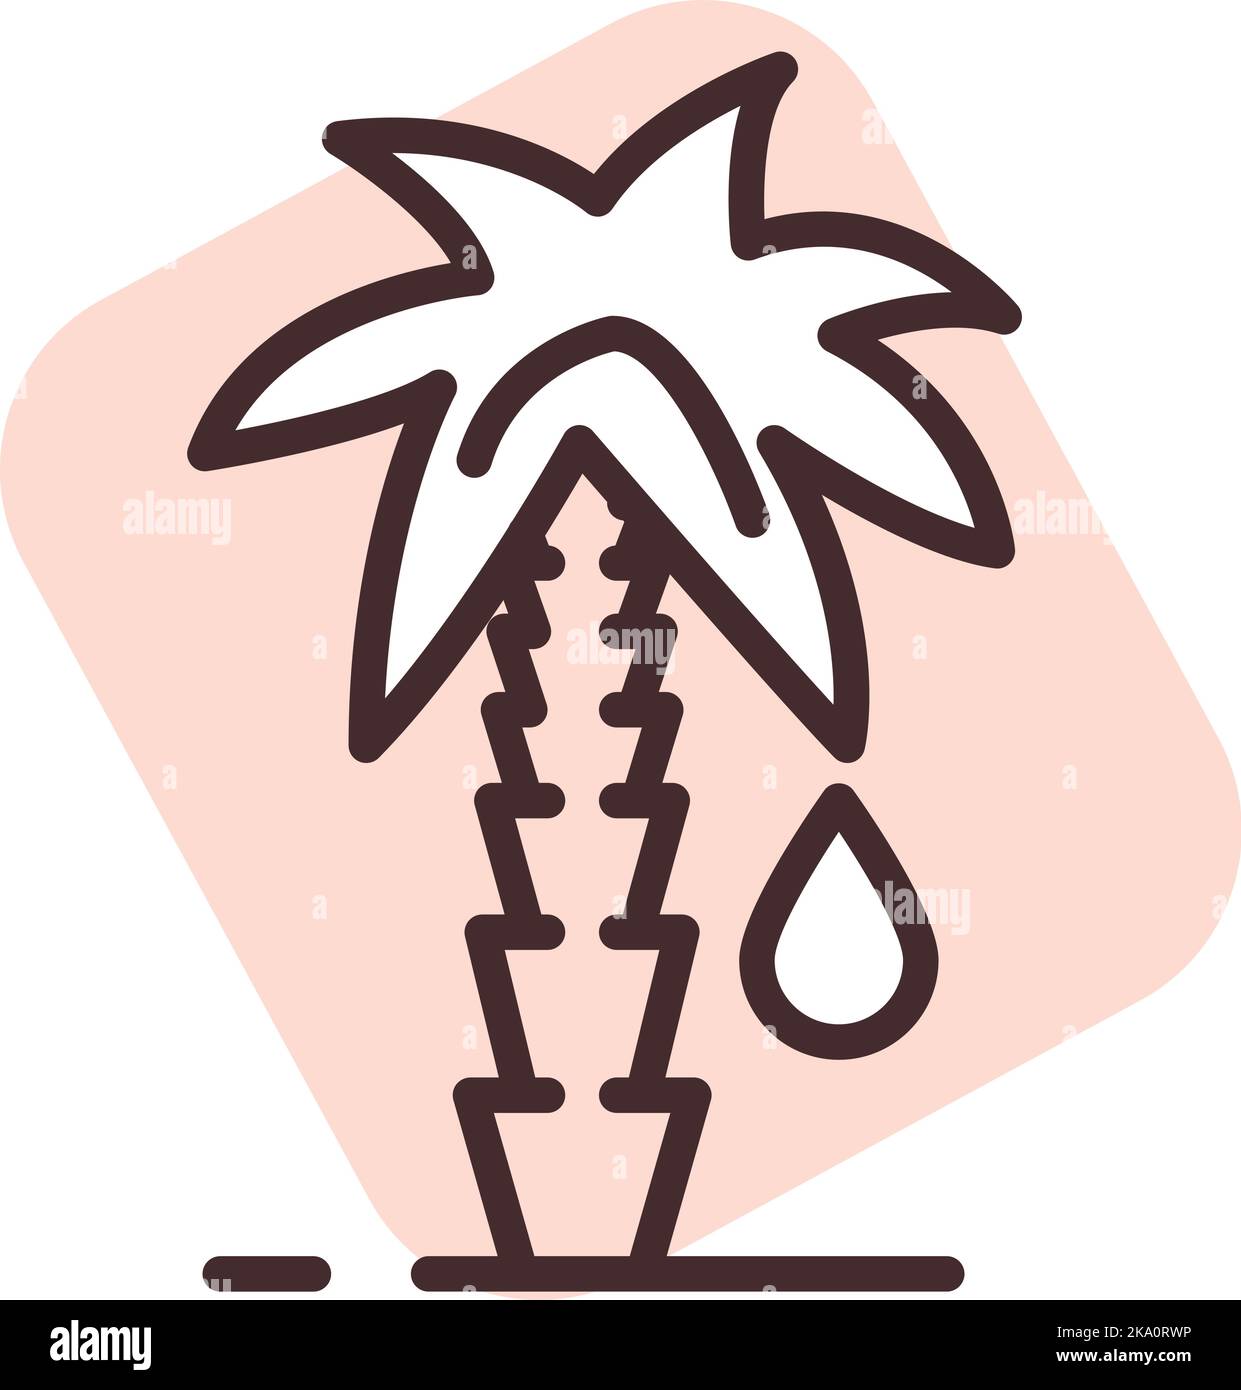 Palmöl-Allergie, Illustration oder Symbol, Vektor auf weißem Hintergrund. Stock Vektor